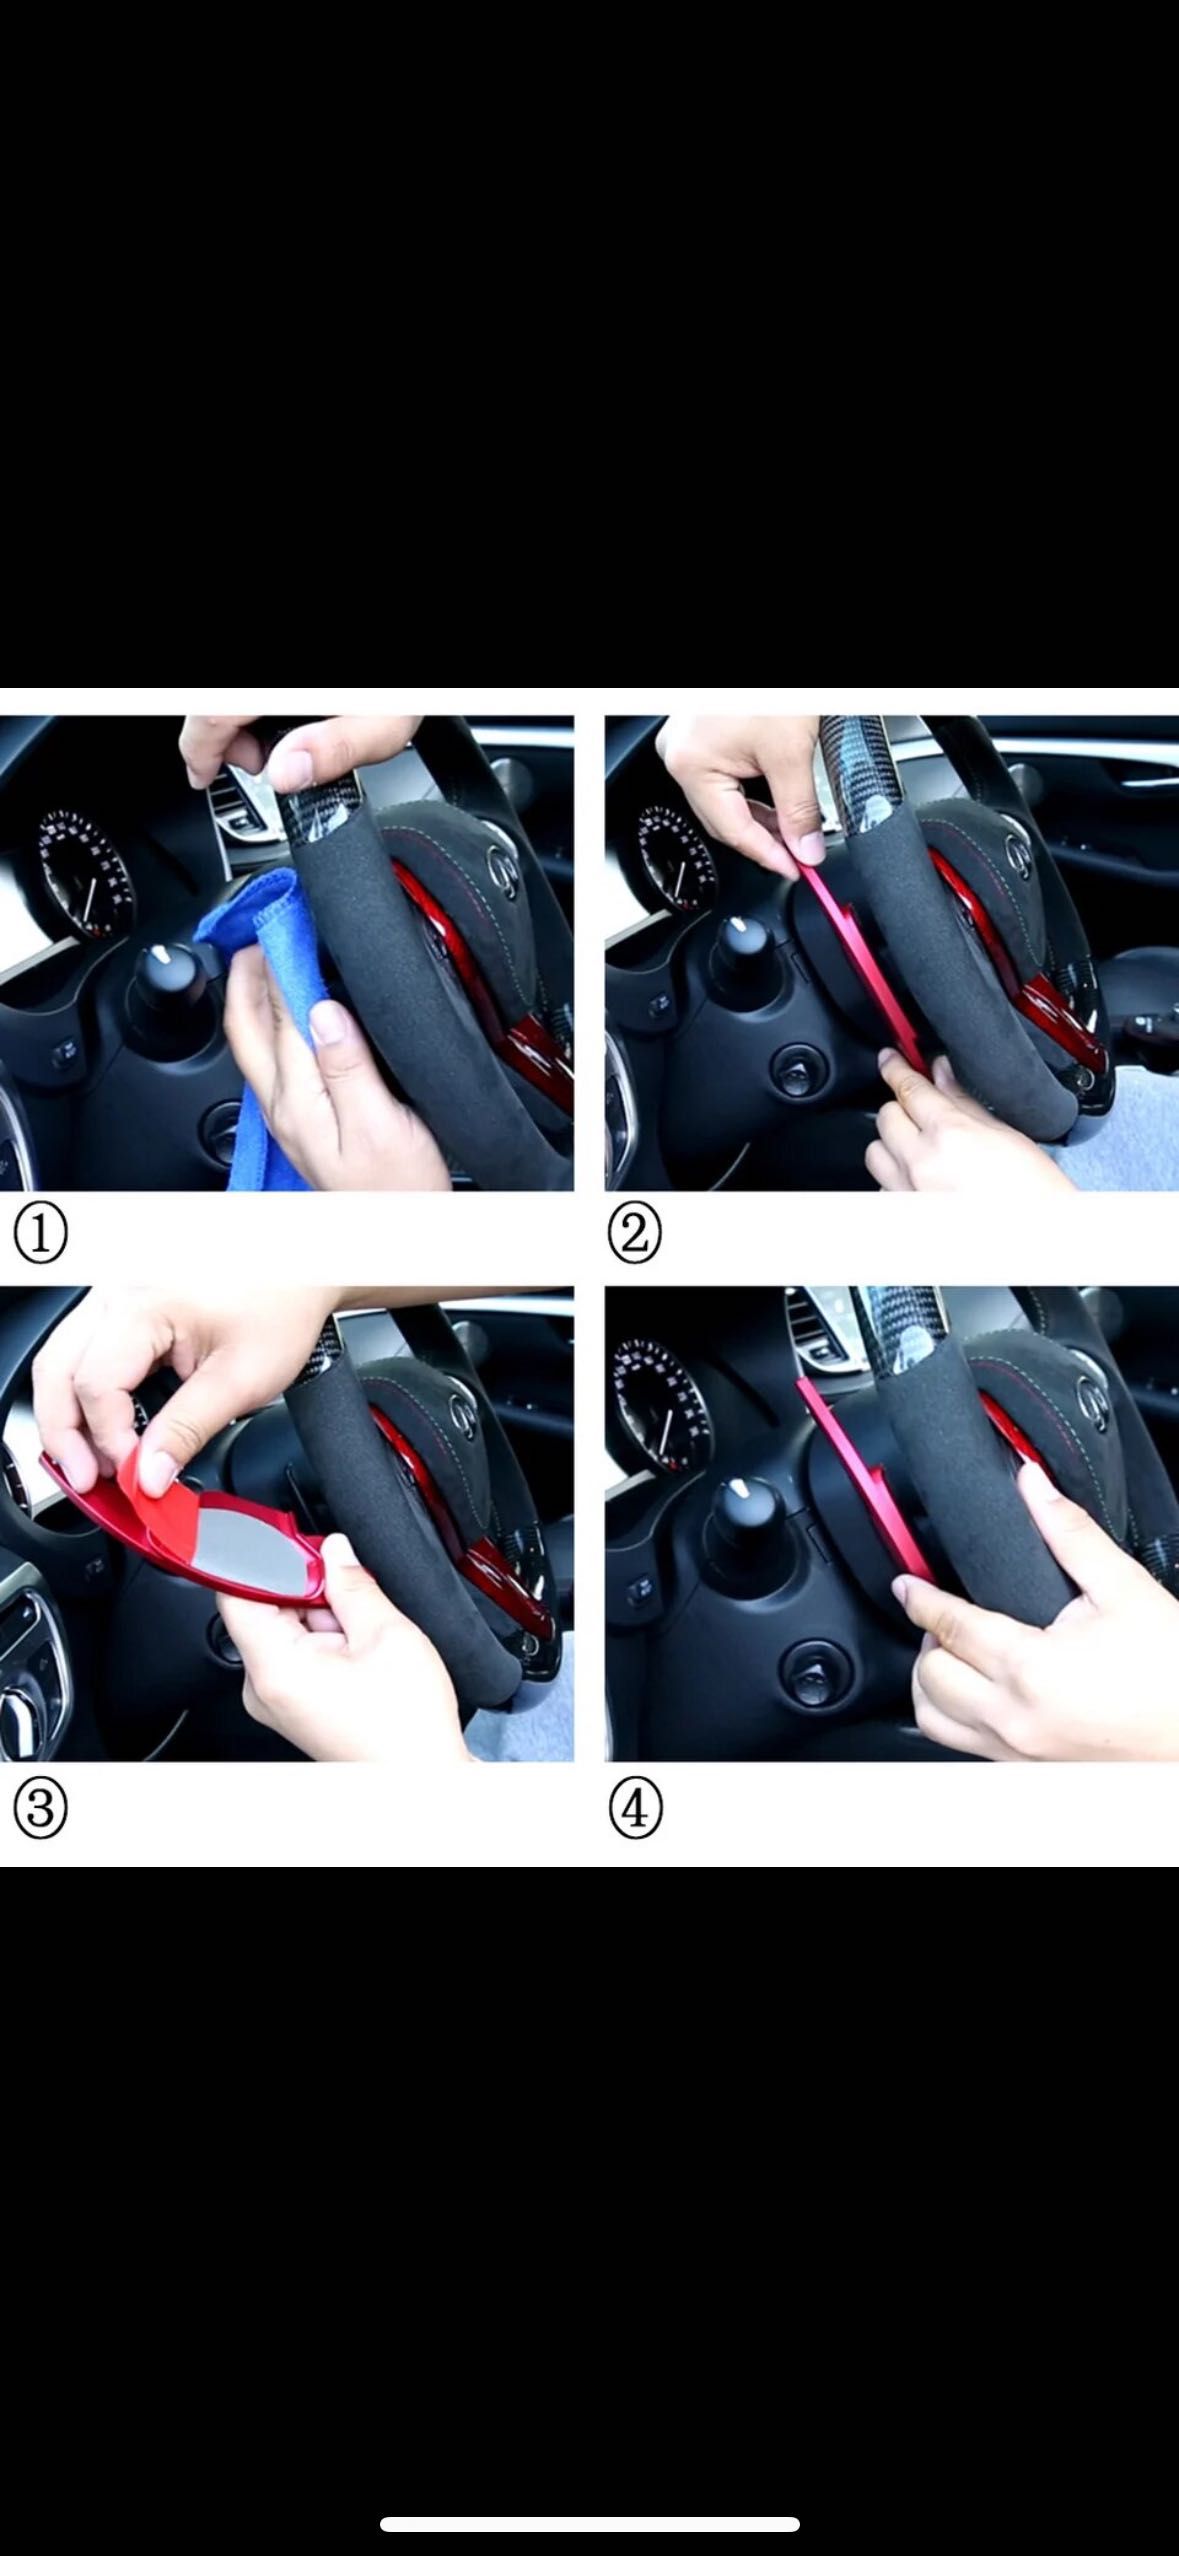 Подрулевые лепестки Infiniti Q50 Q60 лепестки переключения переда руль